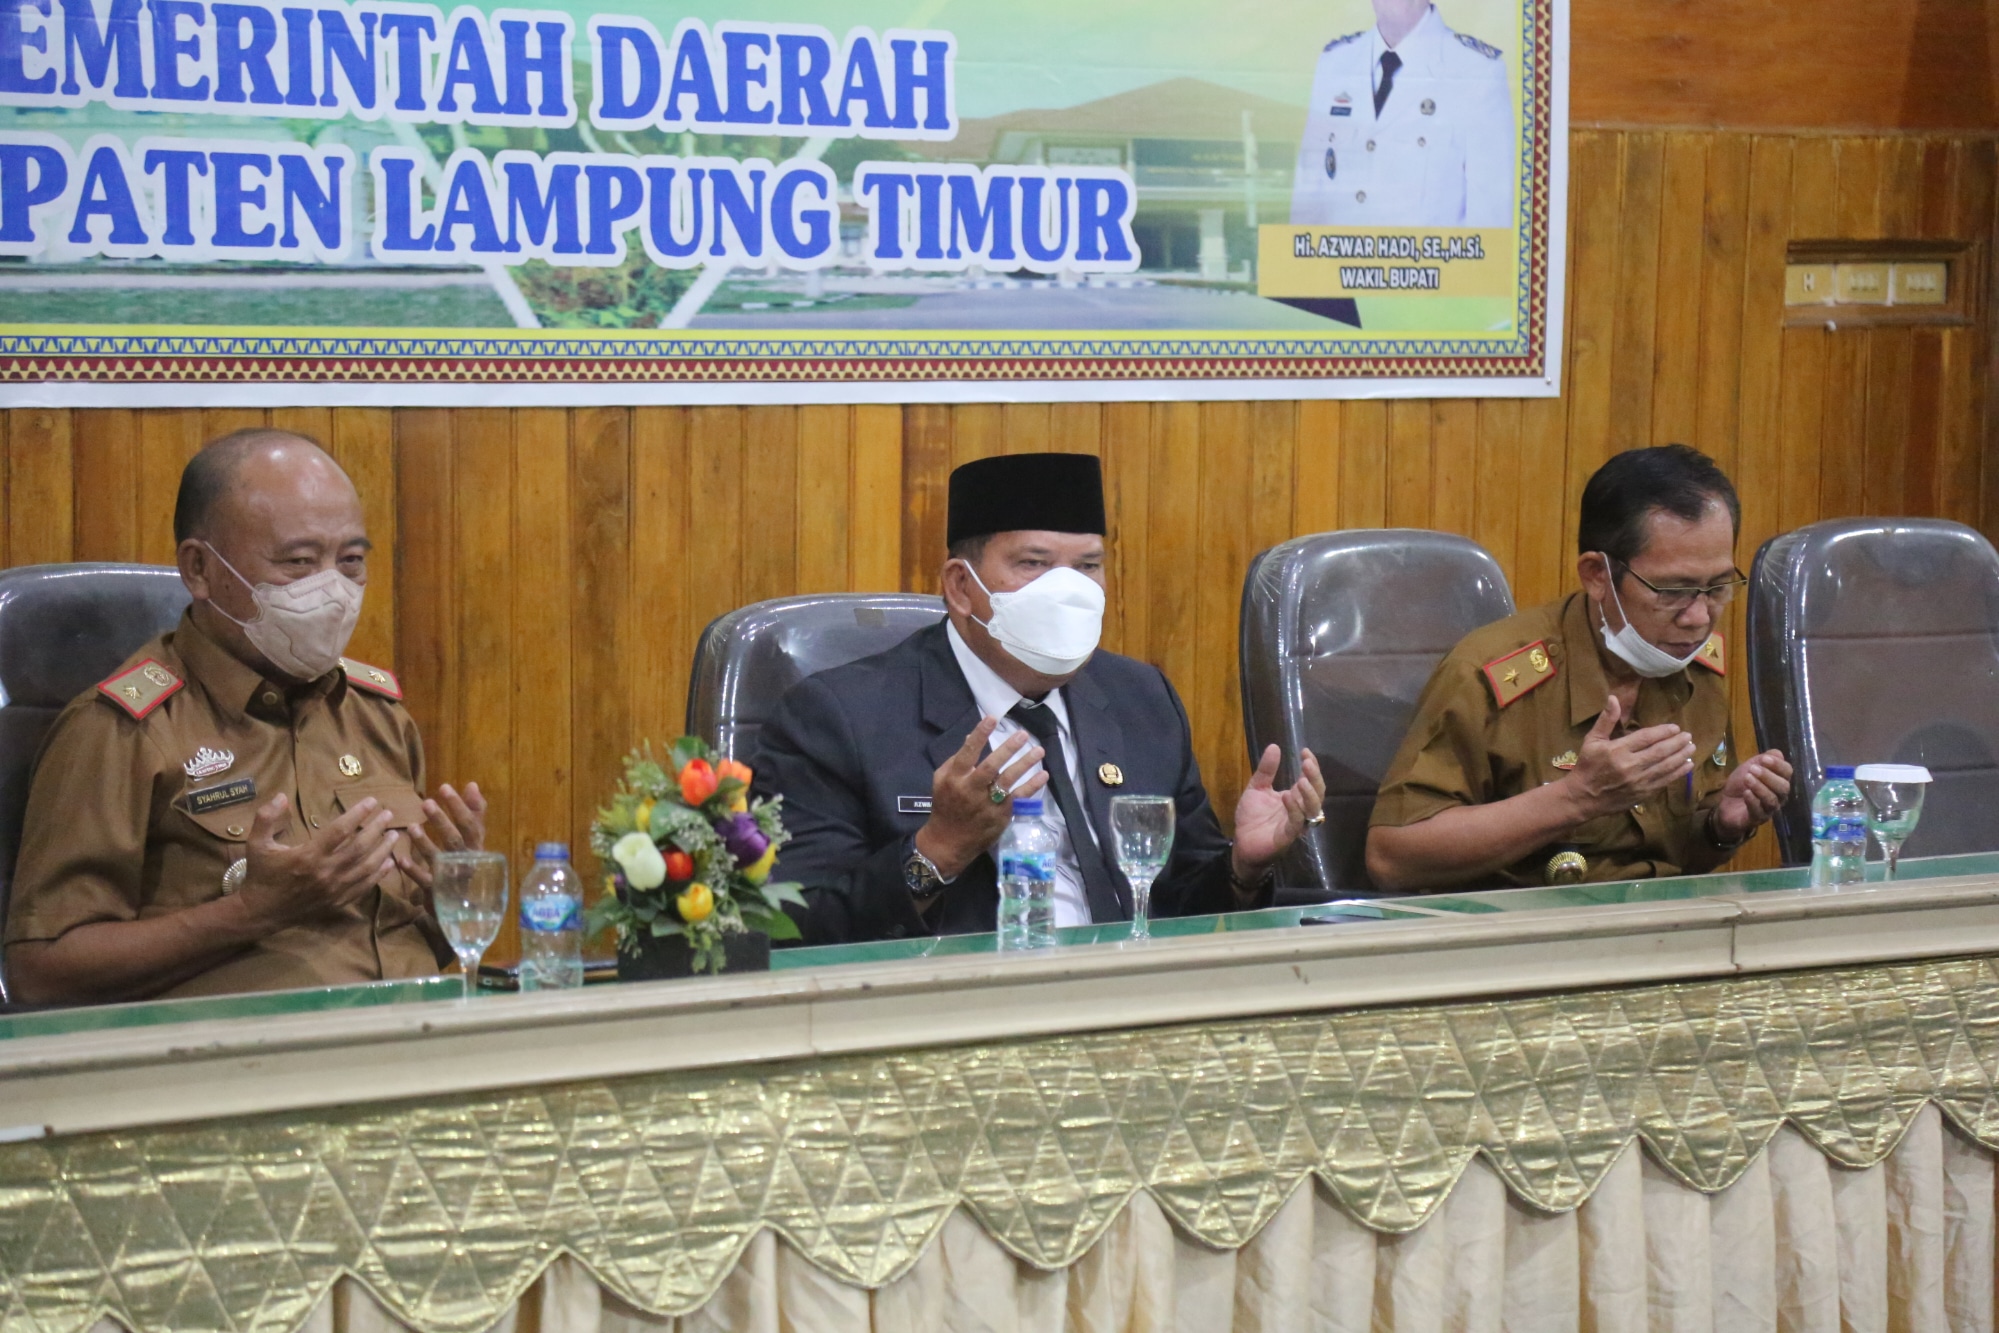 Wakil Bupati Lampung Timur Azwar Hadi Memberi Sambutan Dalam acara Pengambilan Sumpah dan Pelantikan Pejabat Administrasi ke Penjabat Fungsional di Lingkungan